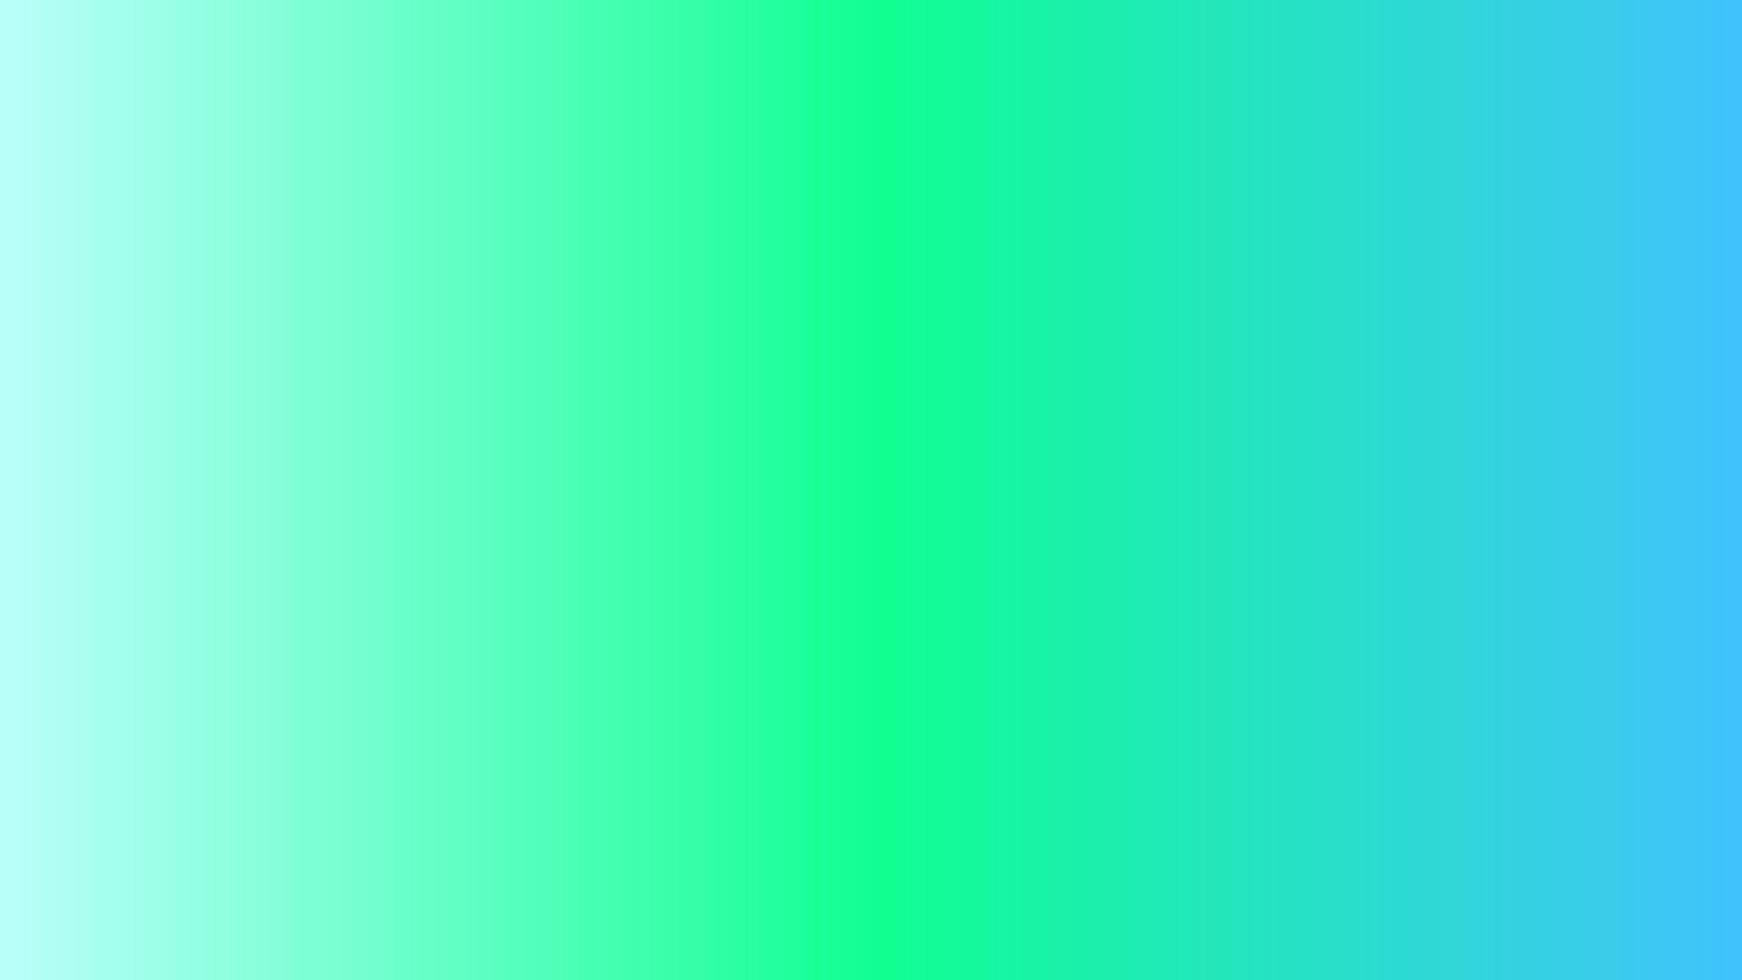 fondo degradado abstracto verde claro, púrpura perfecto para diseño, papel tapiz, promoción, presentación, sitio web, banner, etc. fondo de ilustración vector